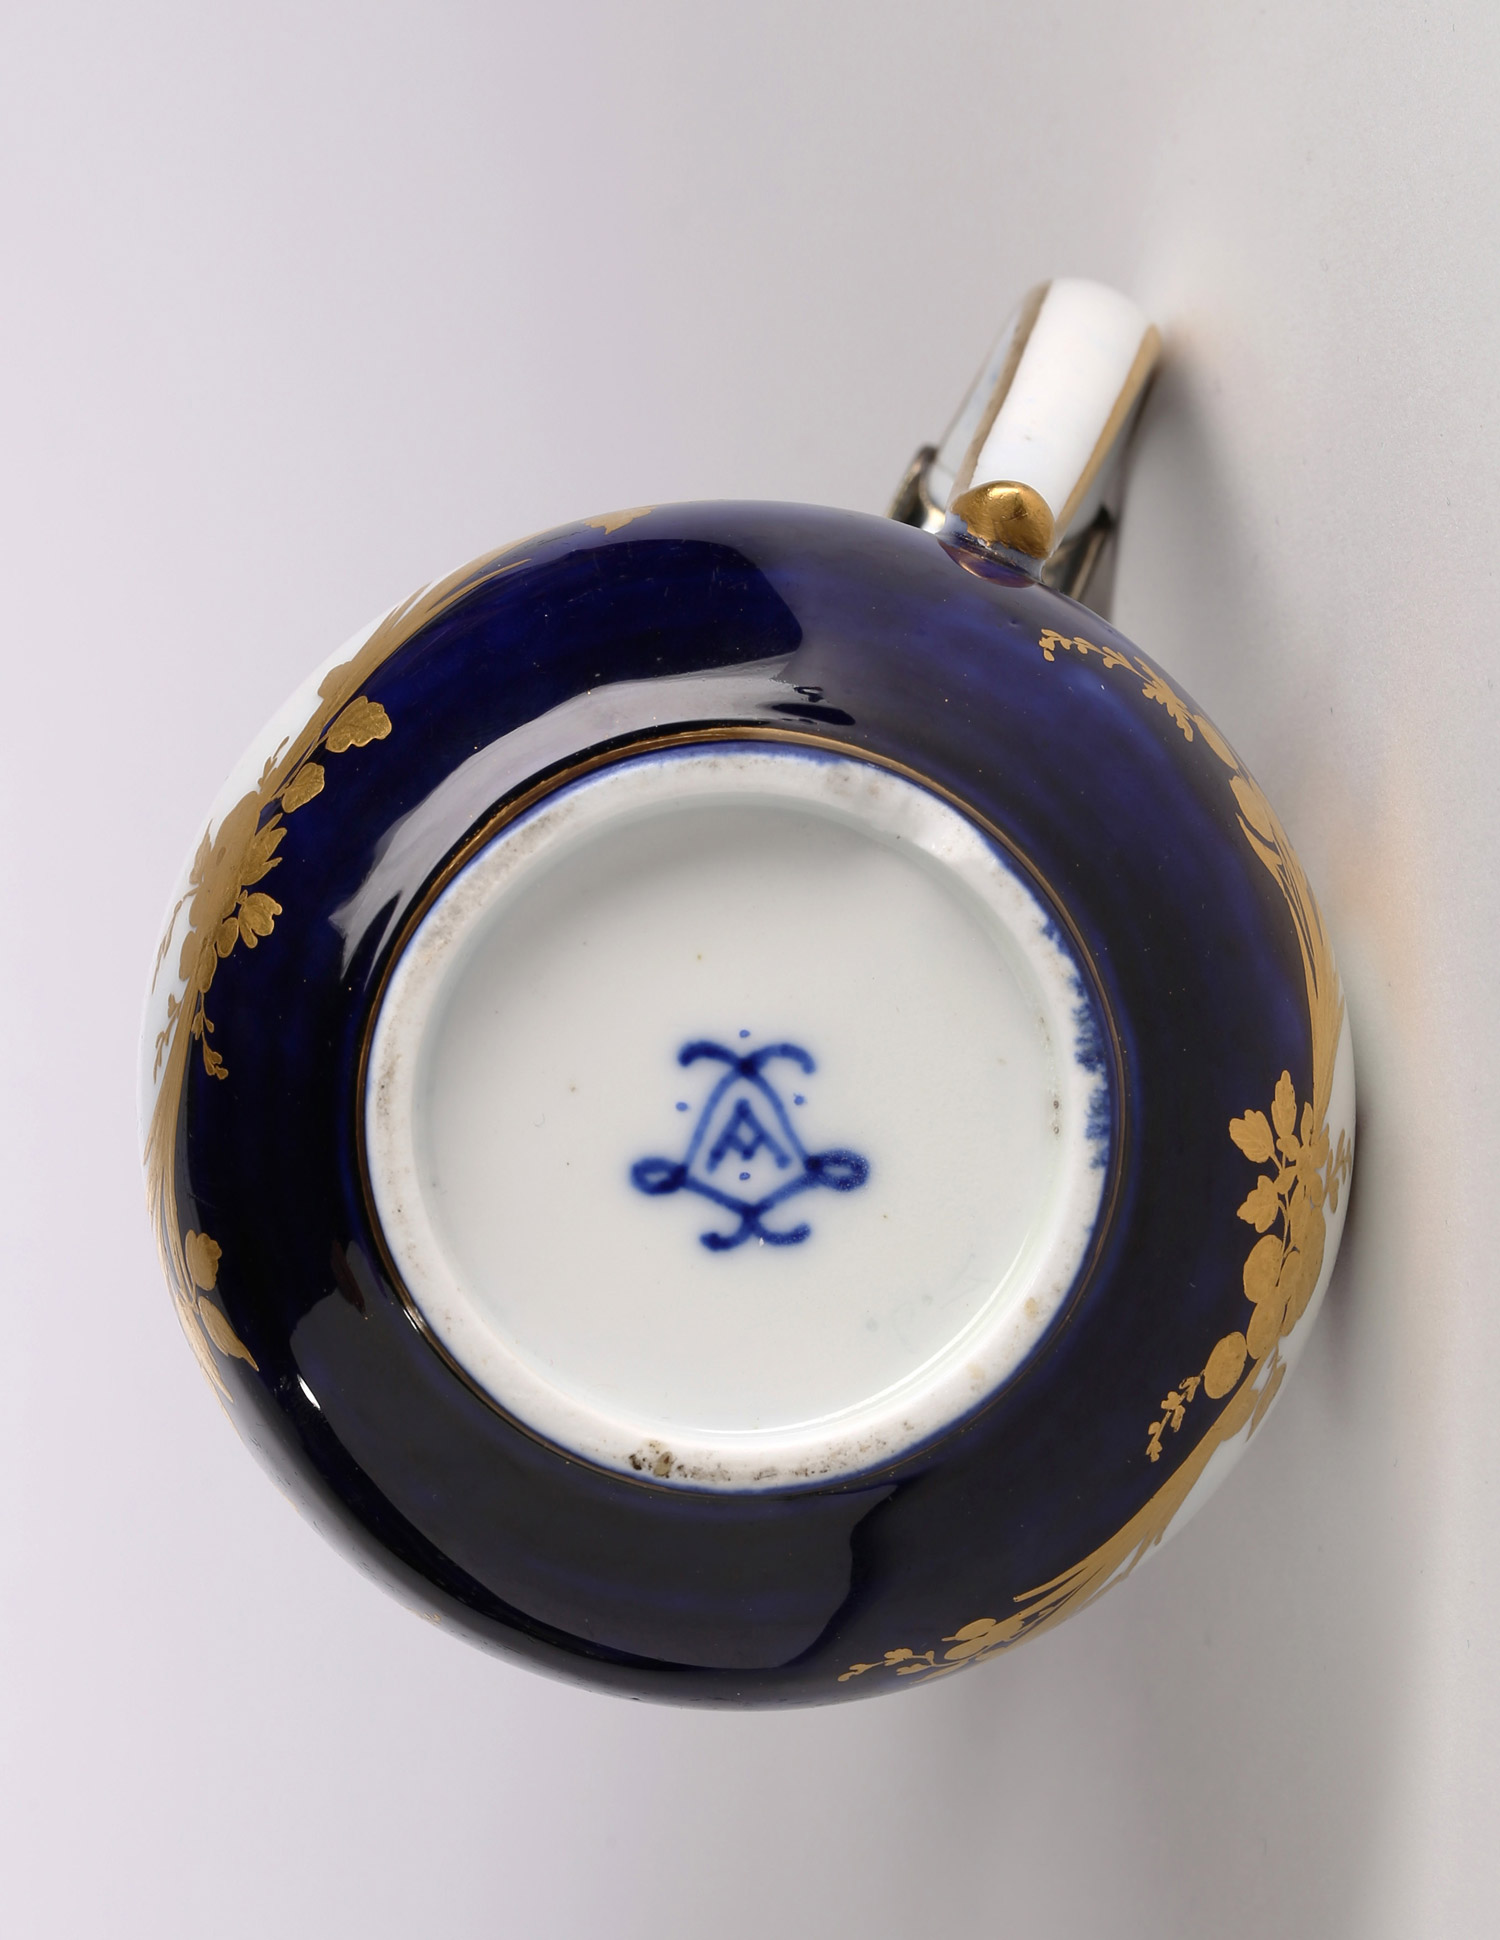 Detail, ewer and cover, pot à l’eau tourney, second size, bleu lapis ground, 1754, silver-gilt mounts. (Private Collection)
